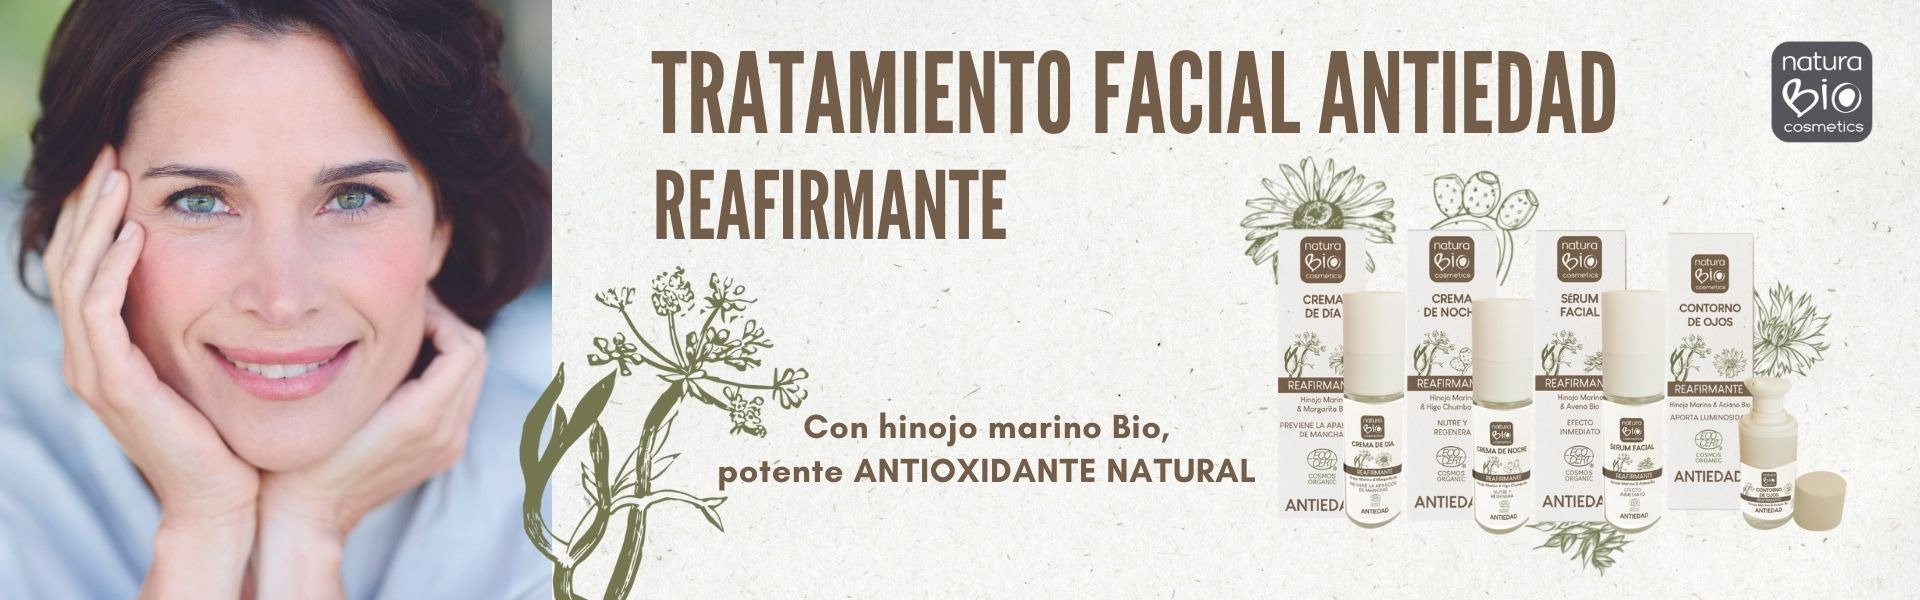 Relanzamiento: Tratamiento facial antiedad reafirmante de NaturaBIO Cosmetics